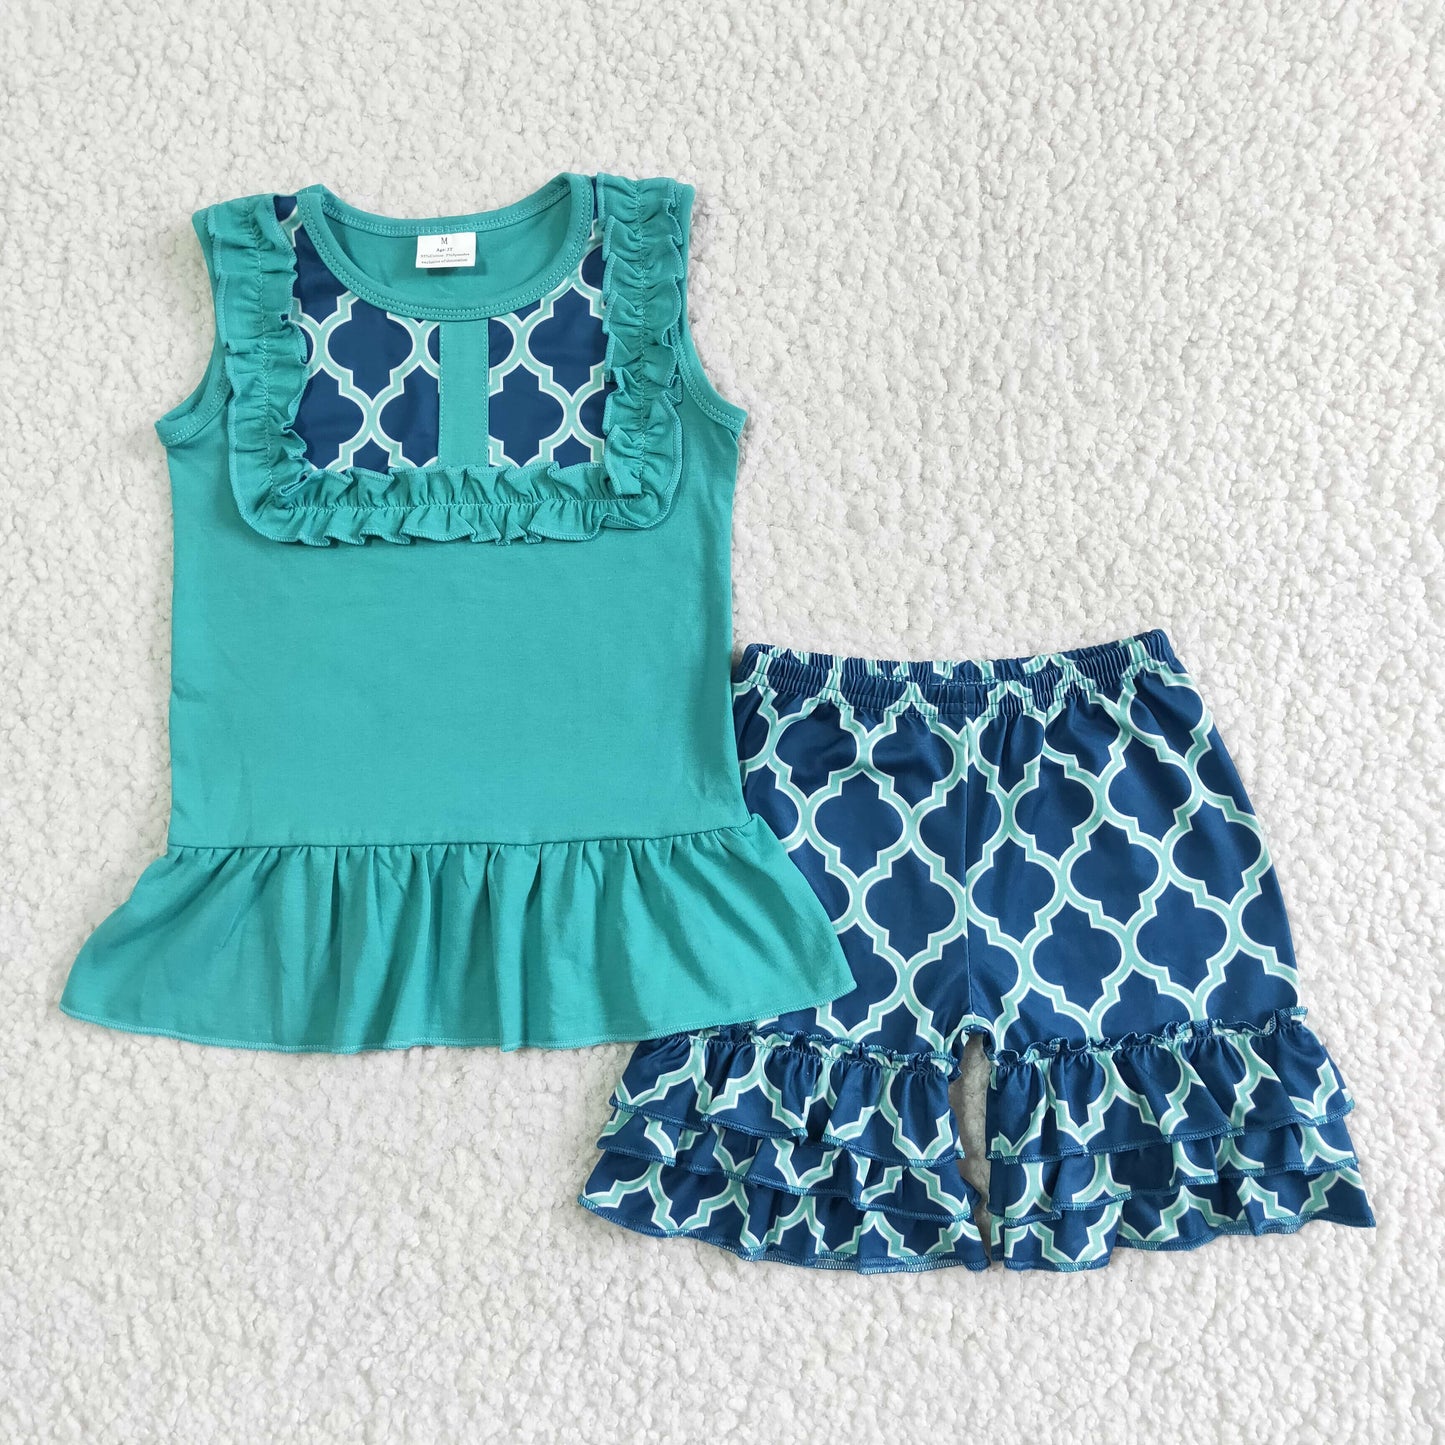 Sleeveless turquoise shirt ruffle shorts girls summer clothing